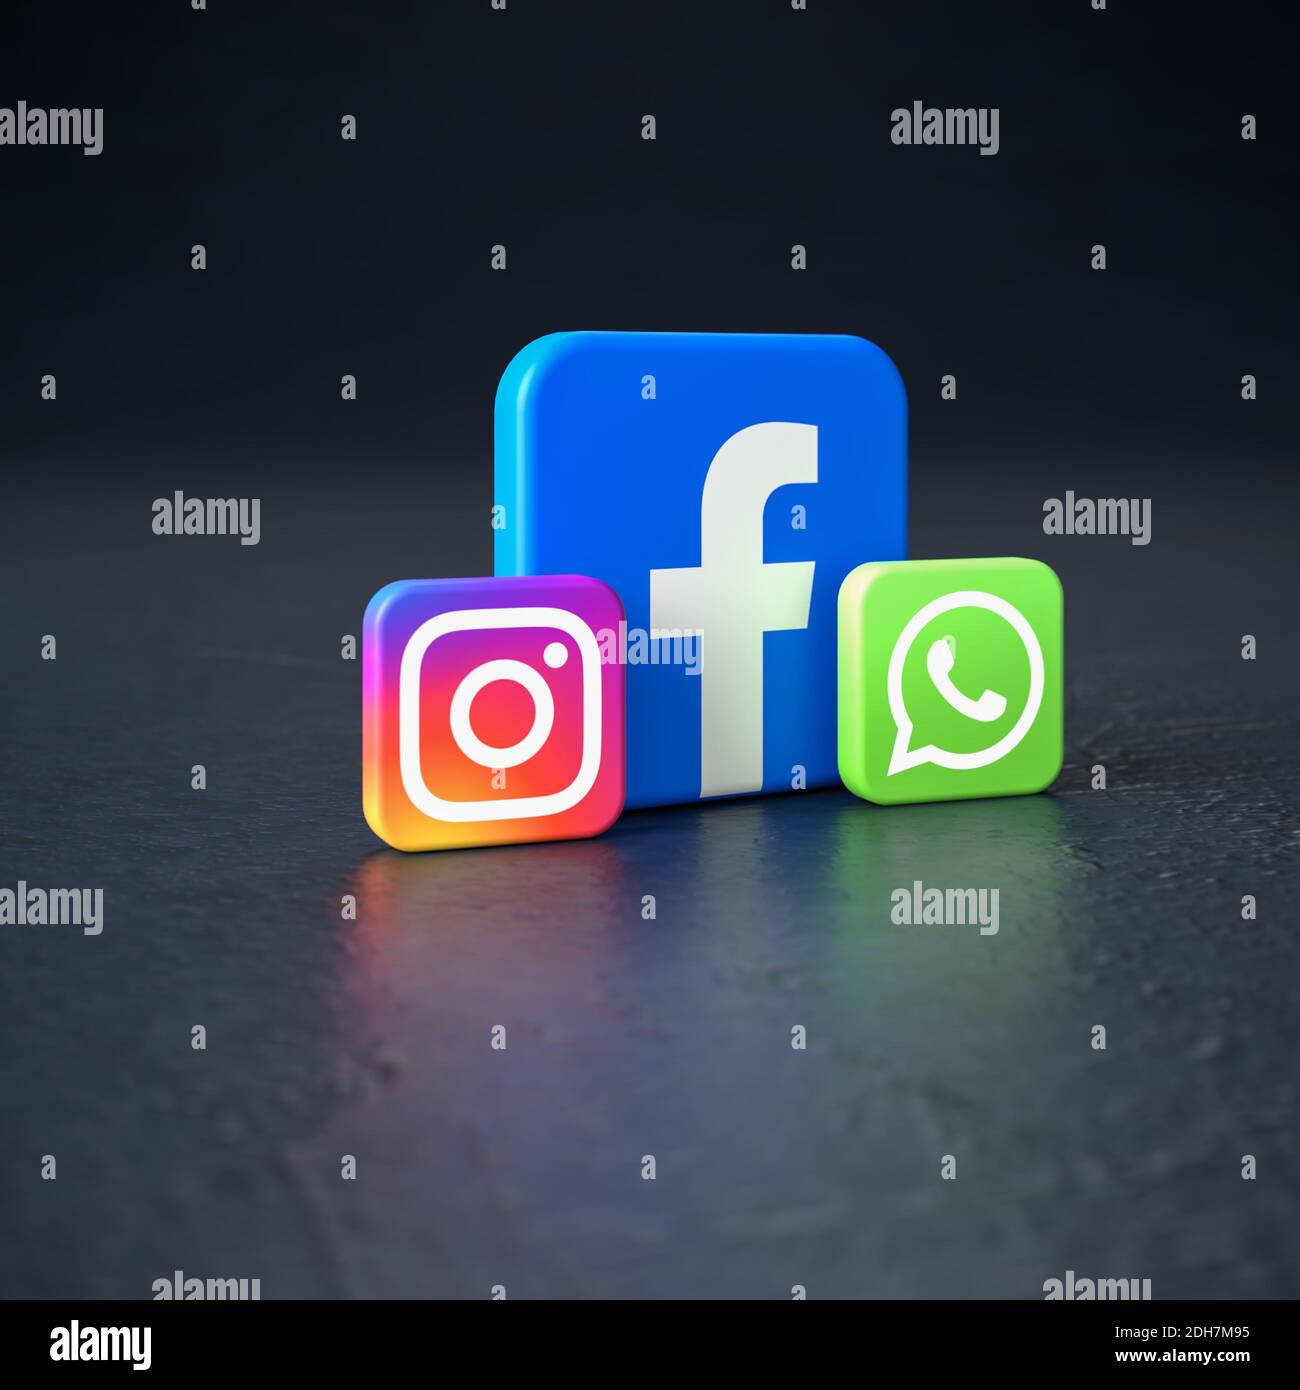 26+] WhatsApp Facebook Instagram Logos Wallpapers - WallpaperSafari